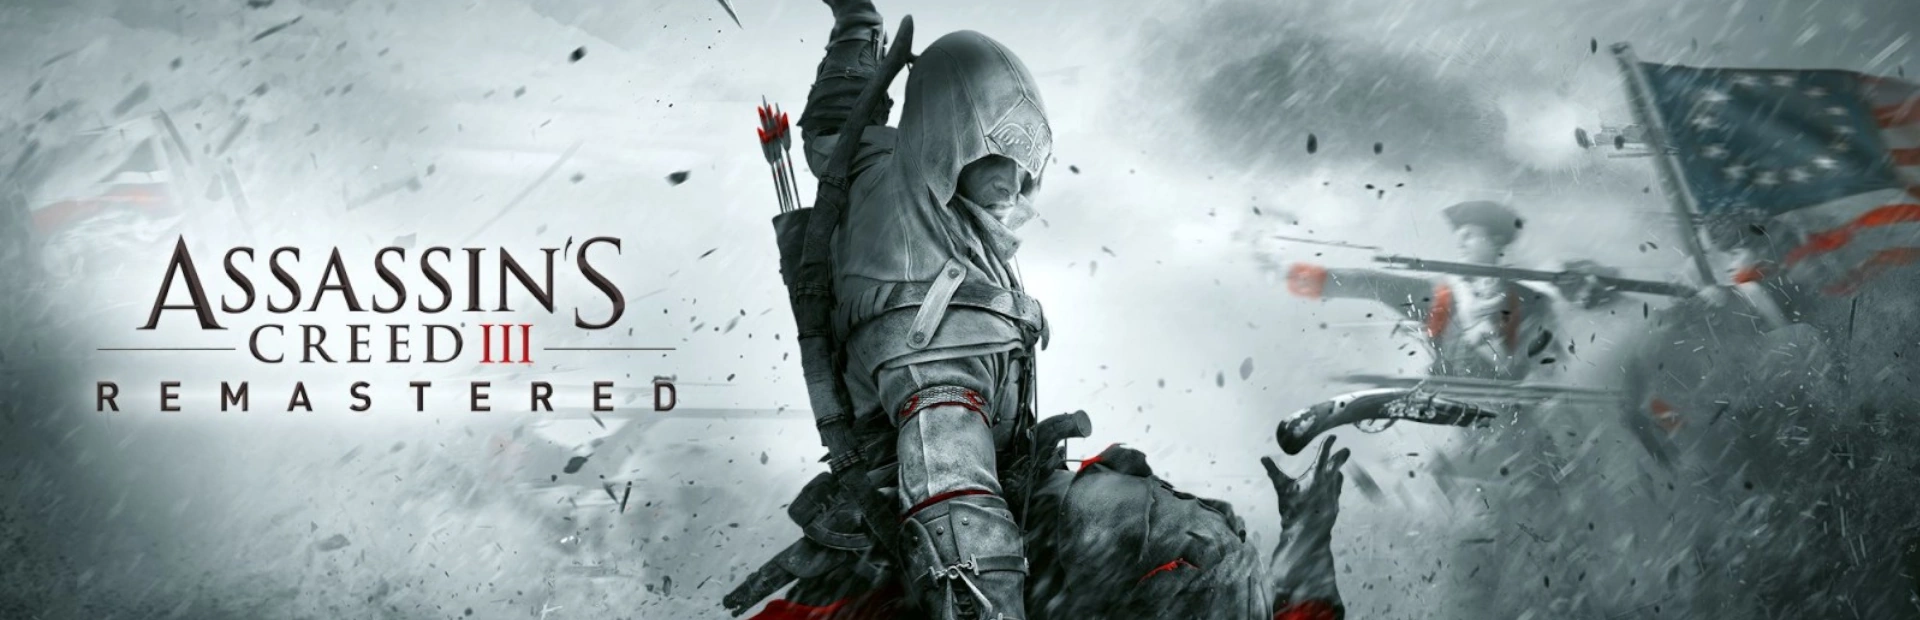 دانلود بازی Assassin's Creed 3 برای کامپیوتر کرک | گیمباتو